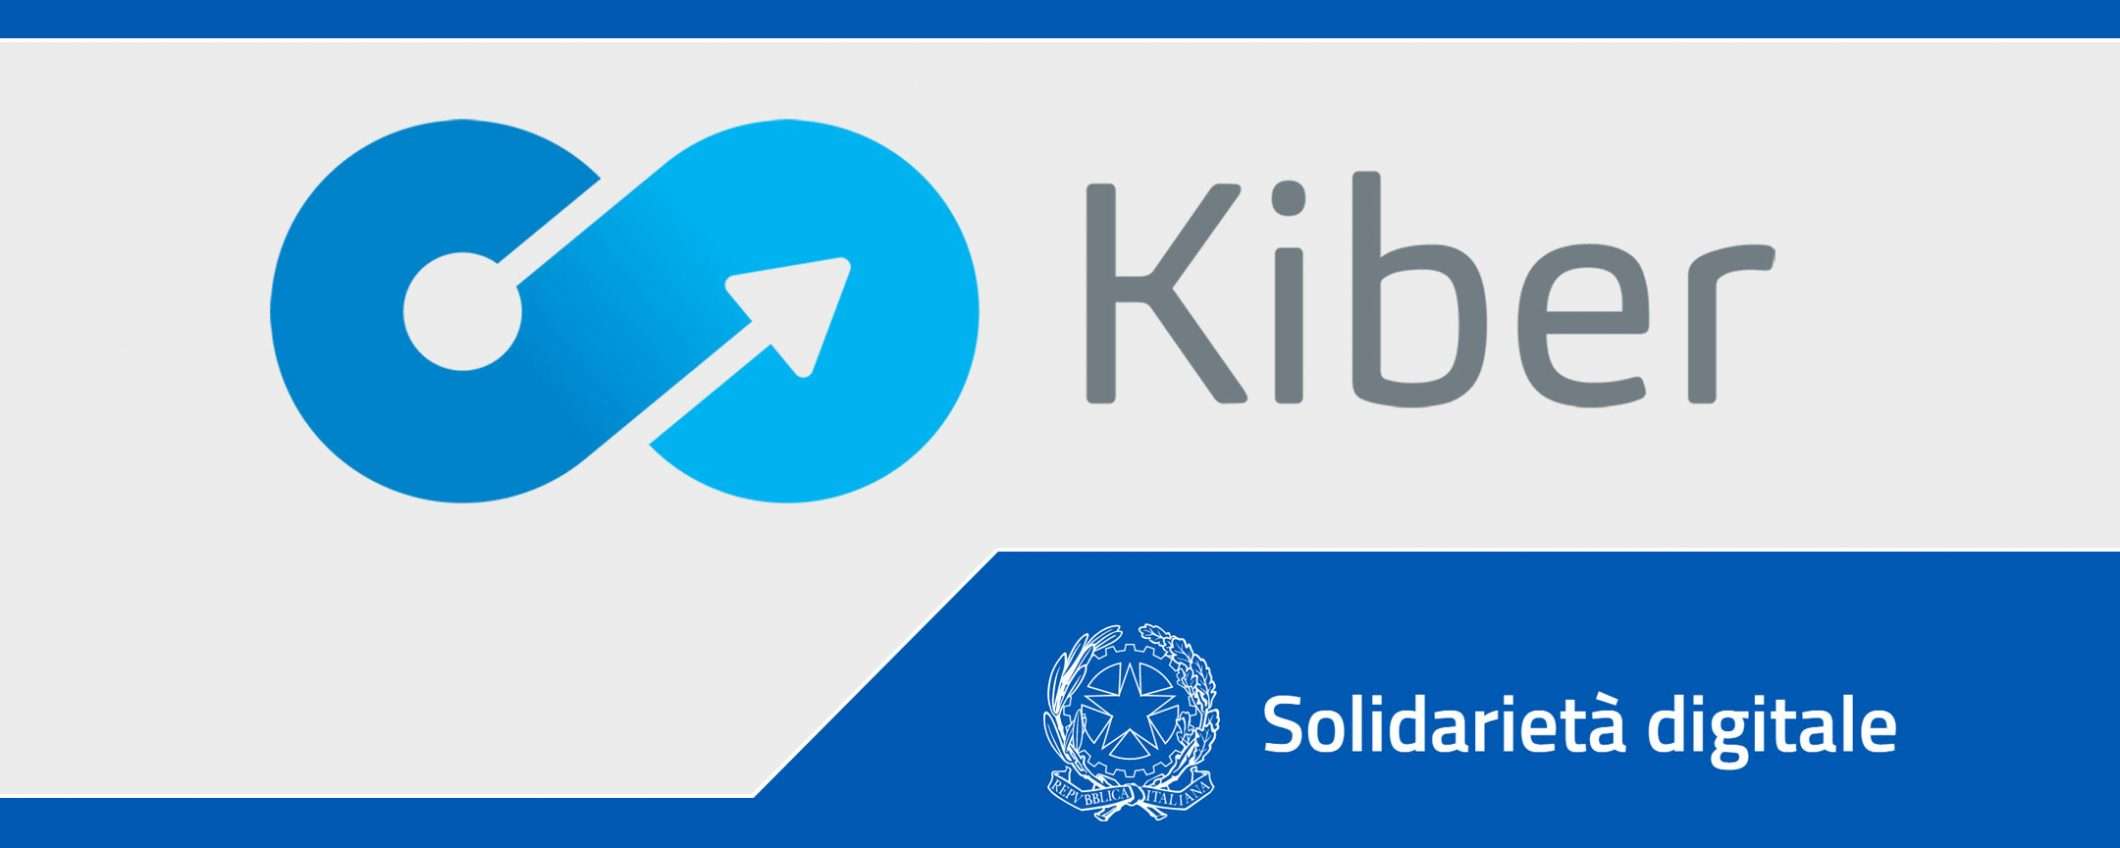 Solidarietà Digitale: Kiber per la comunicazione